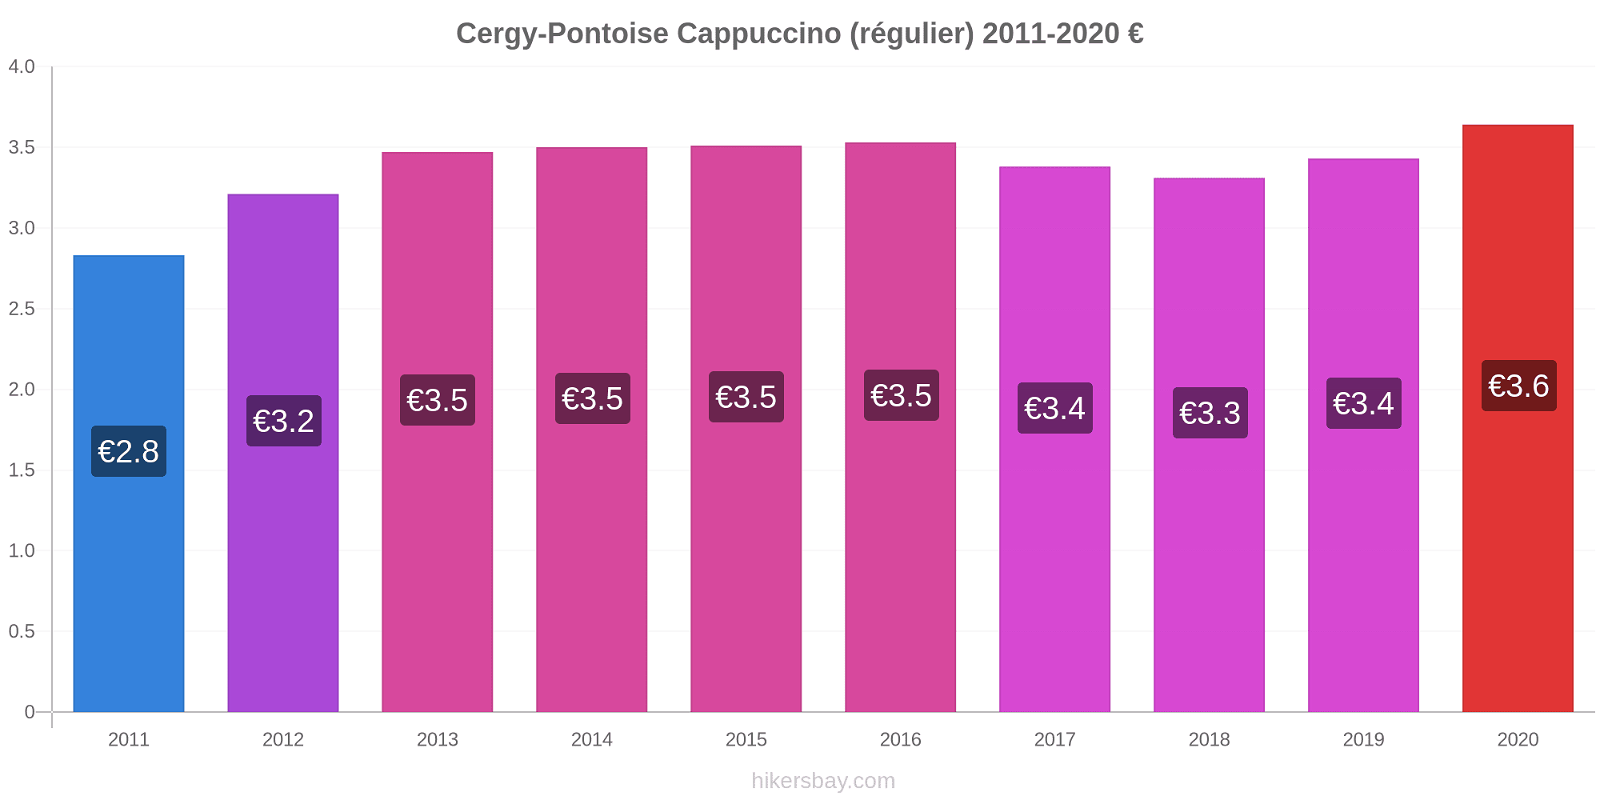 Cergy-Pontoise changements de prix Cappuccino (régulier) hikersbay.com